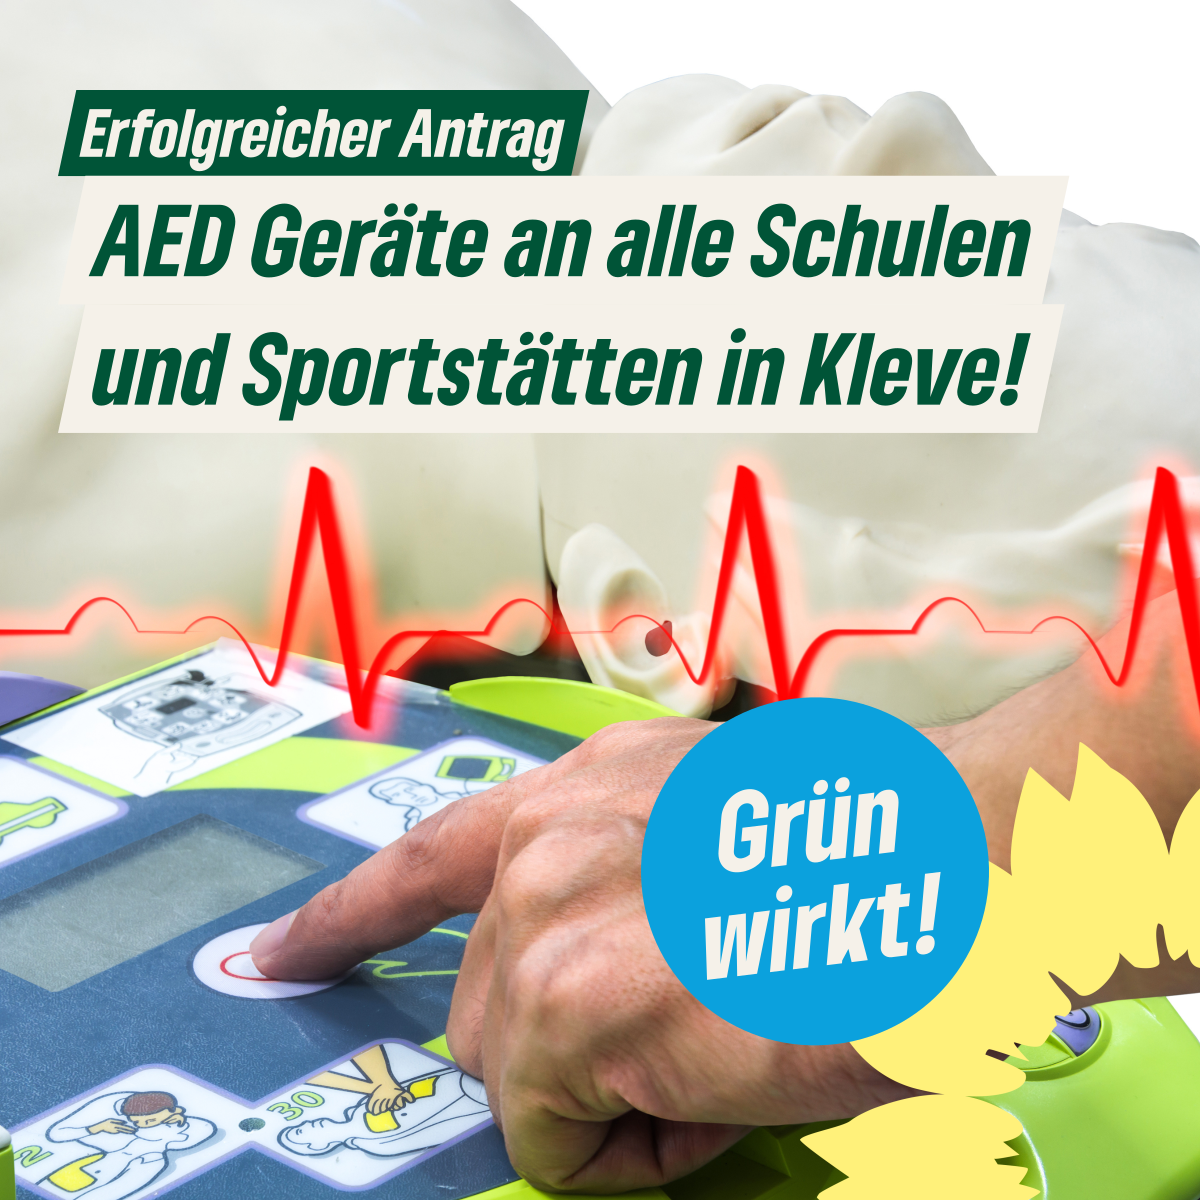 grüne-kleve-gesundheit-erste-hilfe-aed-defibrilator